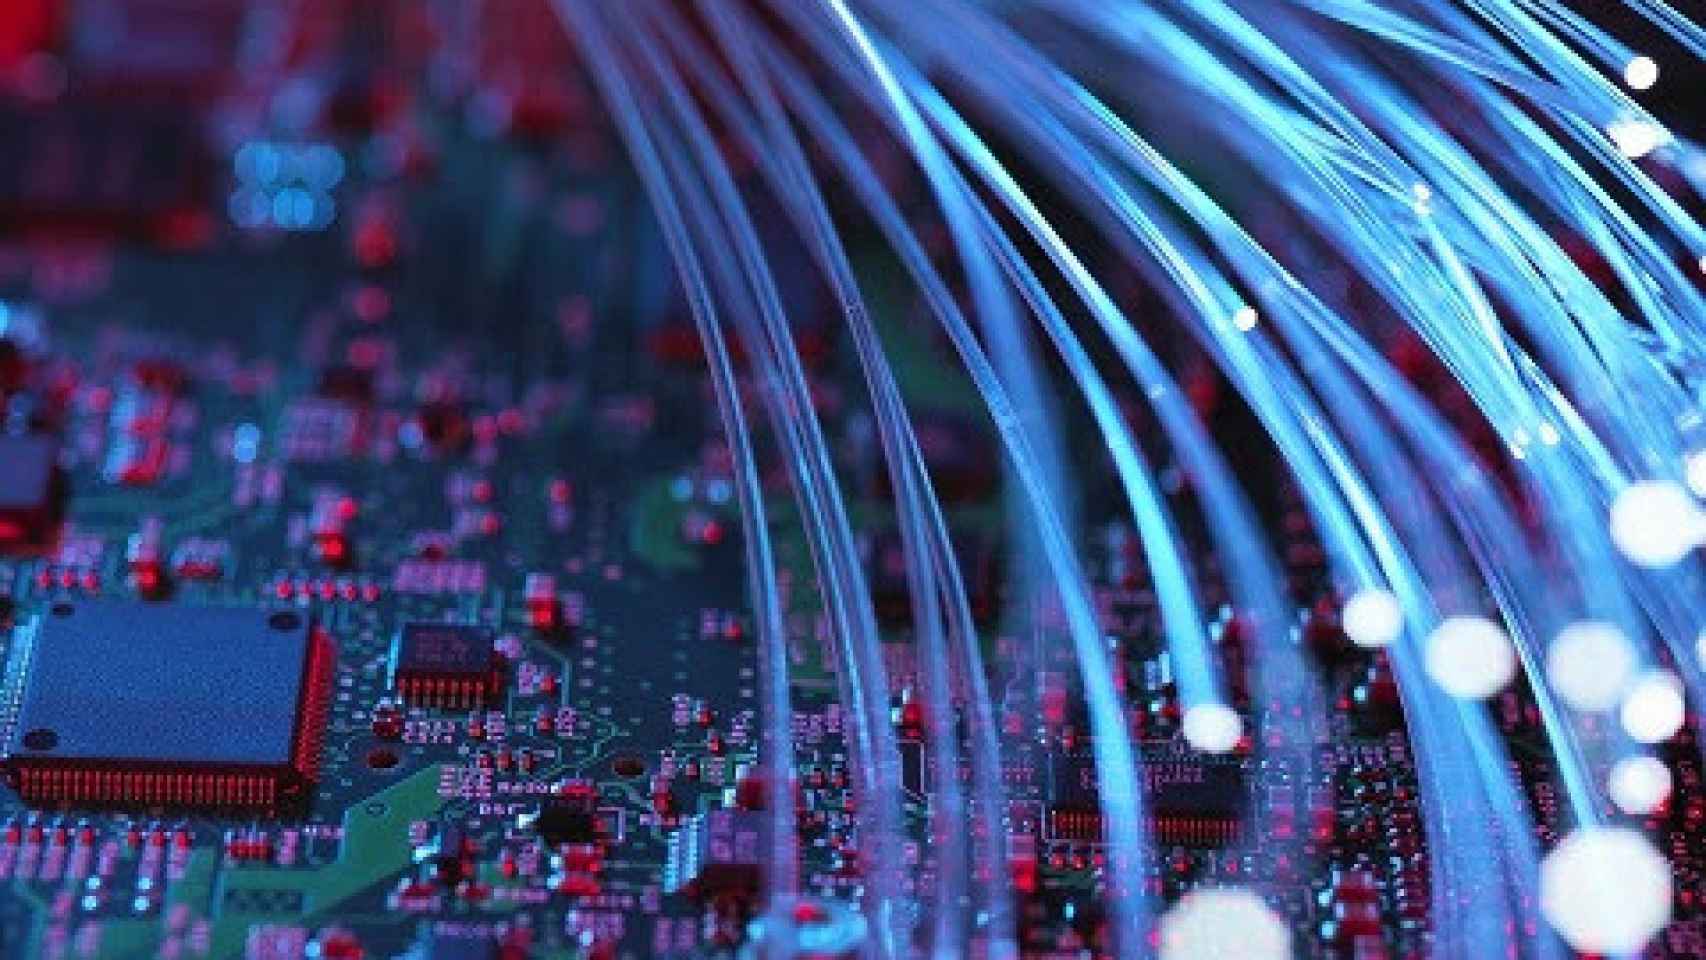 Un cable de fibra óptica encima de una placa electrónica.